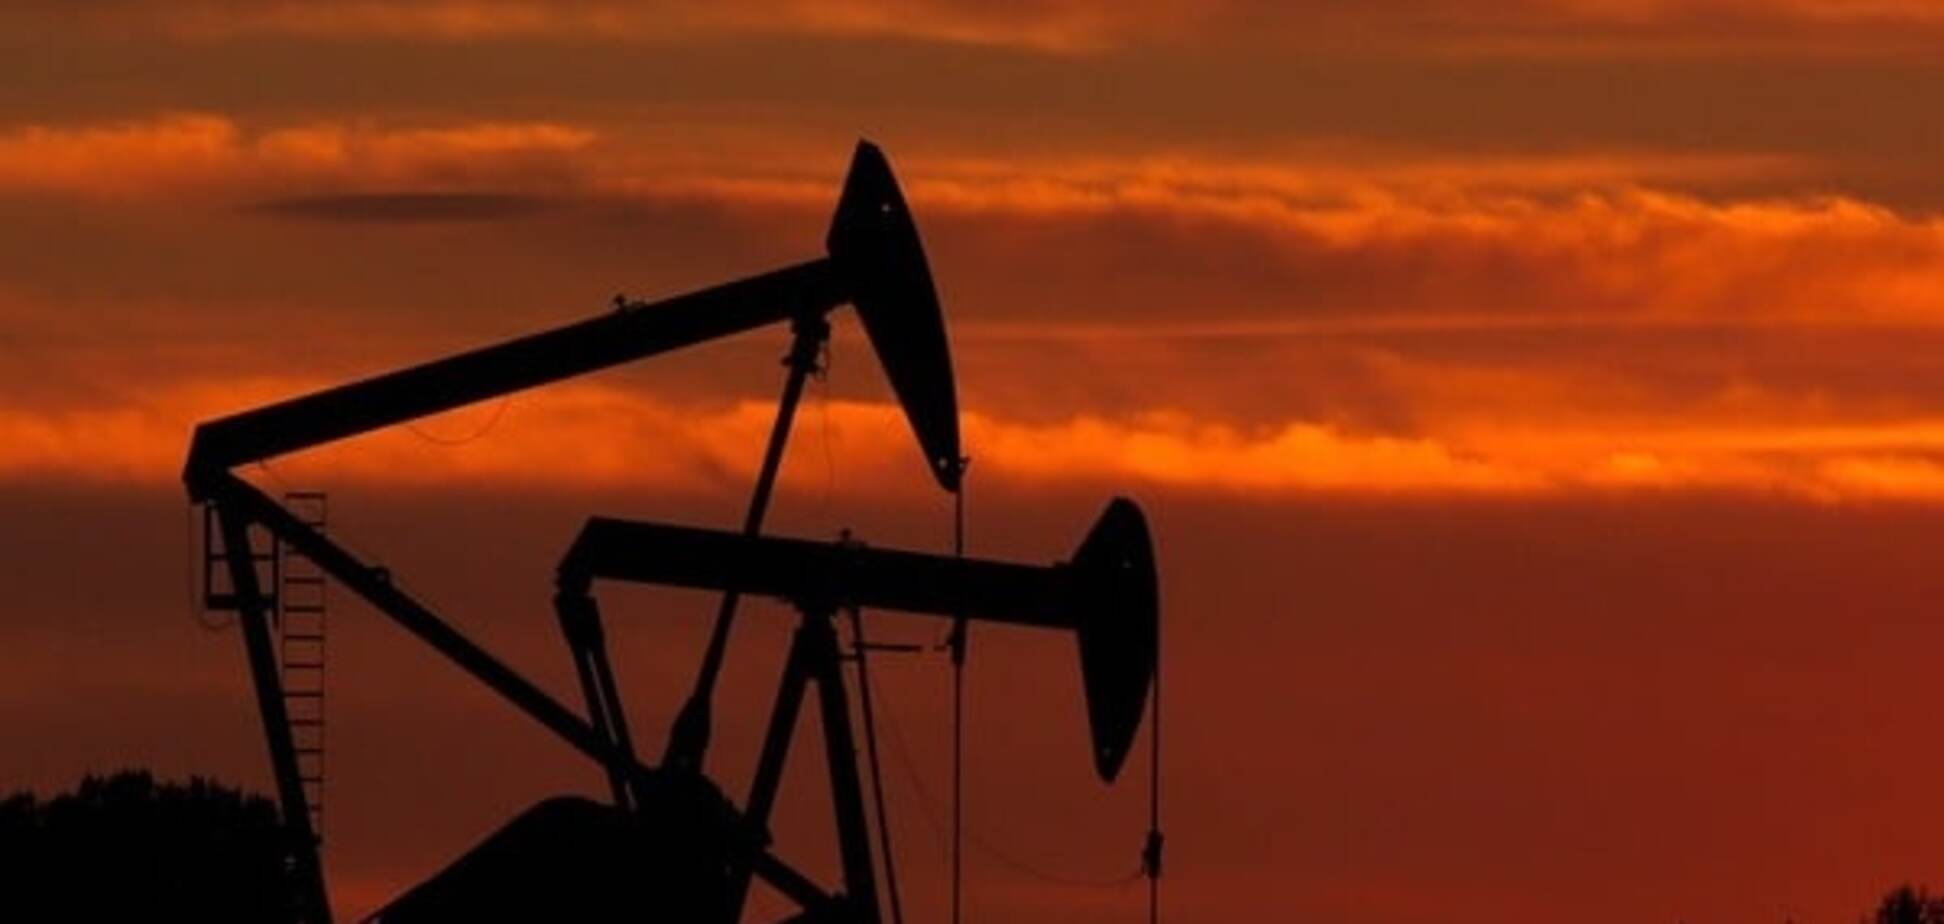 Цены на нефть вернулись к снижению